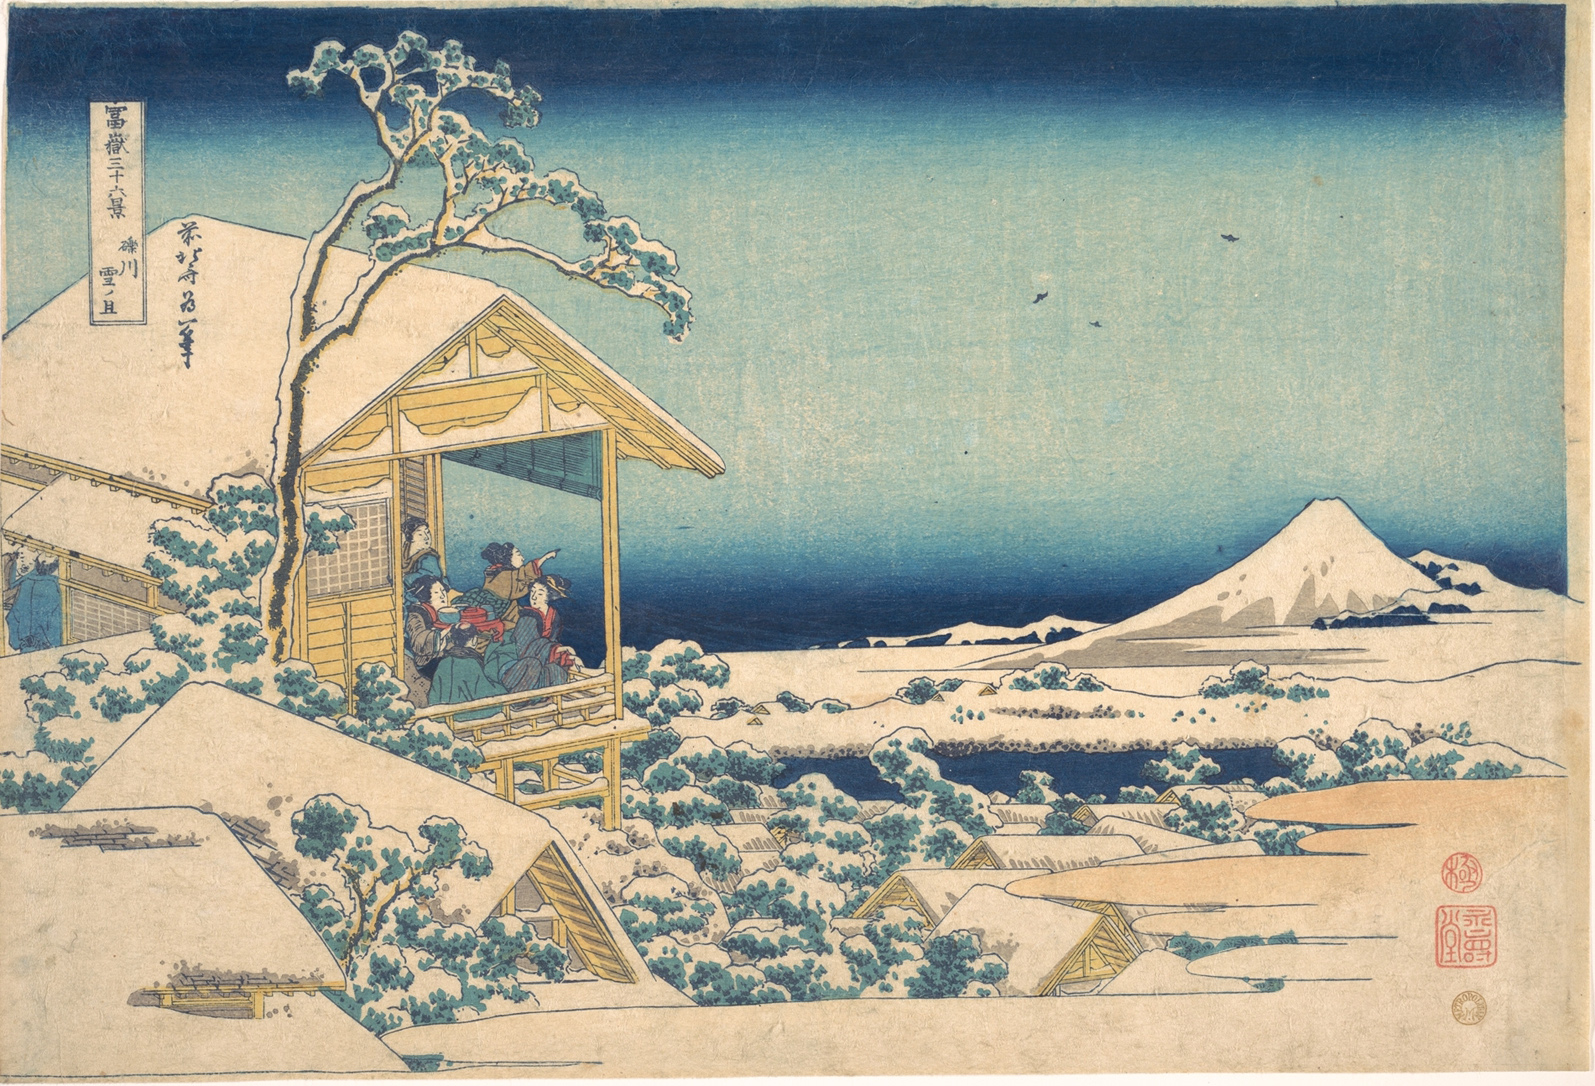 Hokusai - #24 Snowy Morning at Koishikawa - 36 Views of Mt Fuji